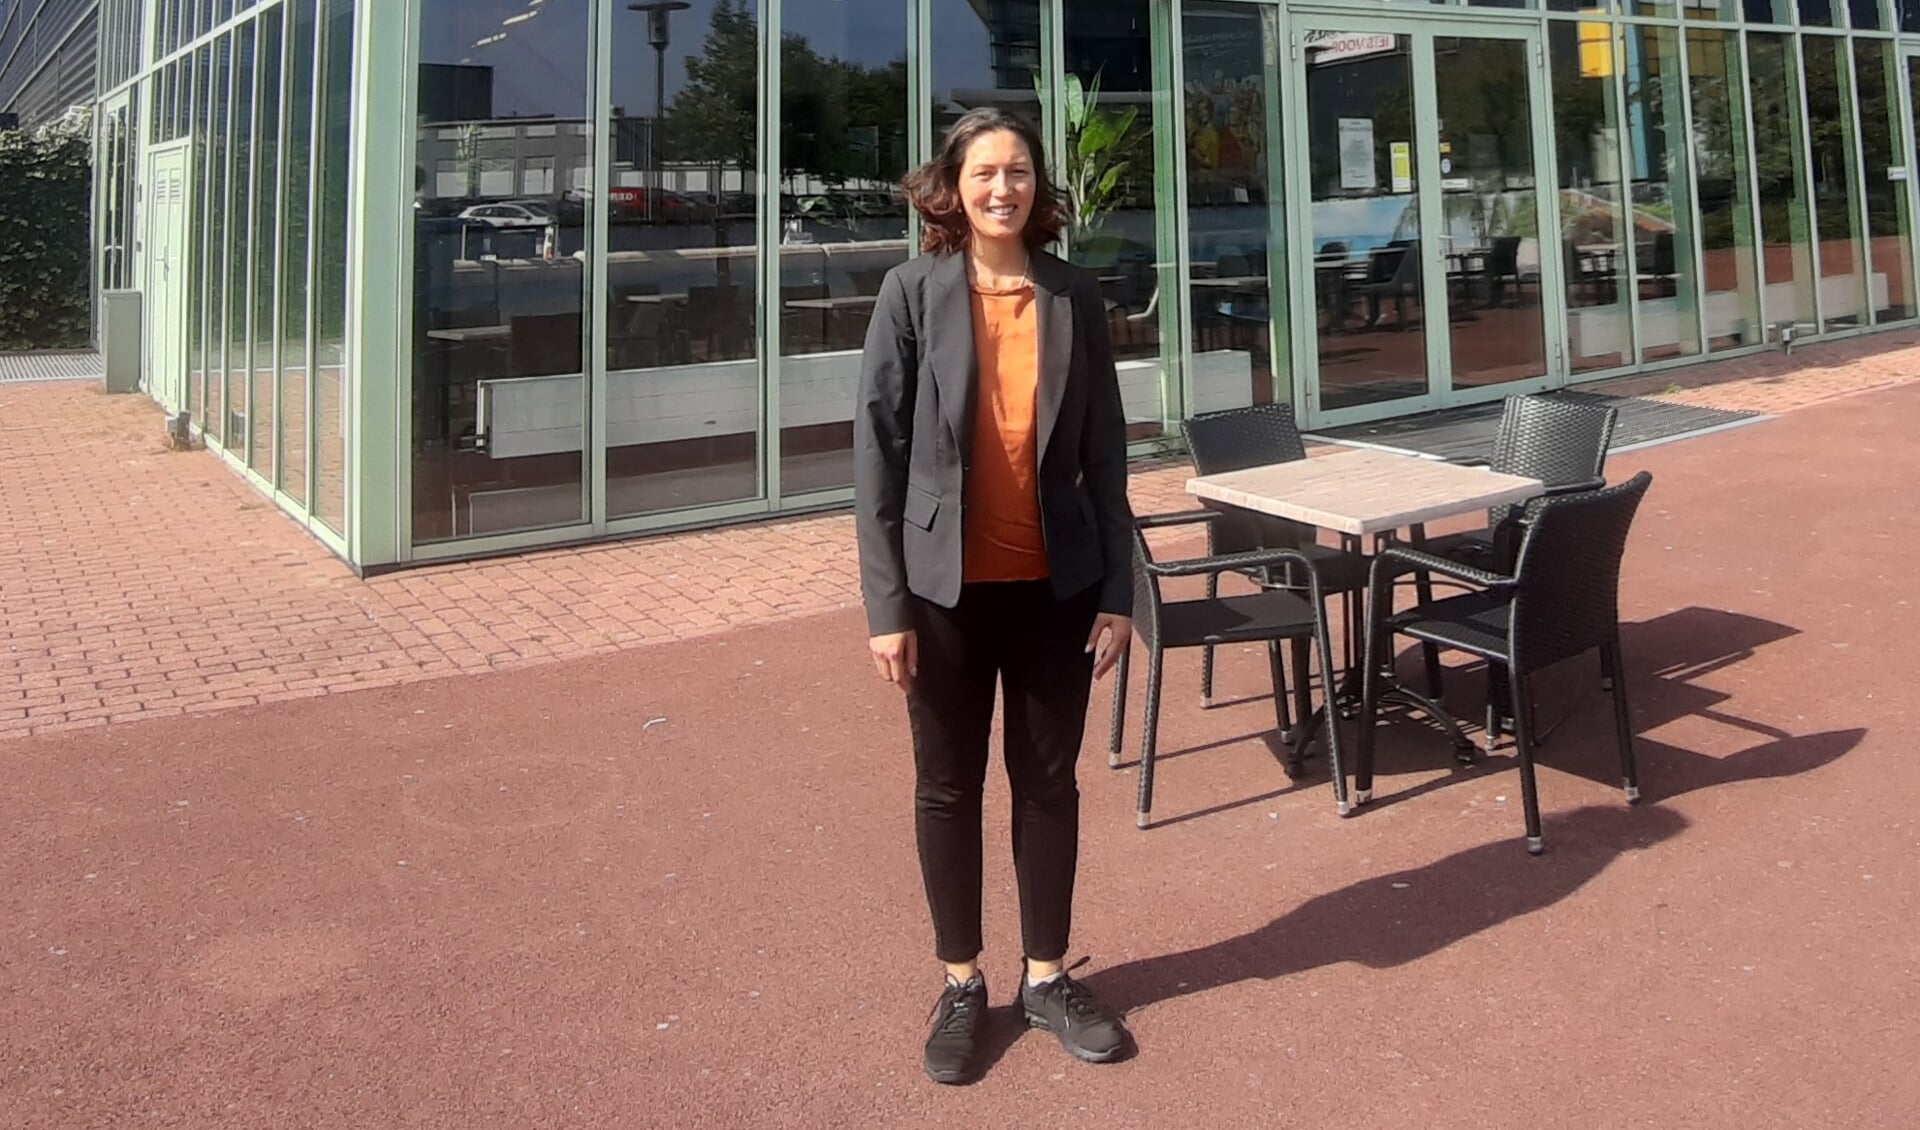 Bioscoopdirecteur Cynthia Marras voor Cinemajestic in Zutphen. Foto: Rudi Hofman